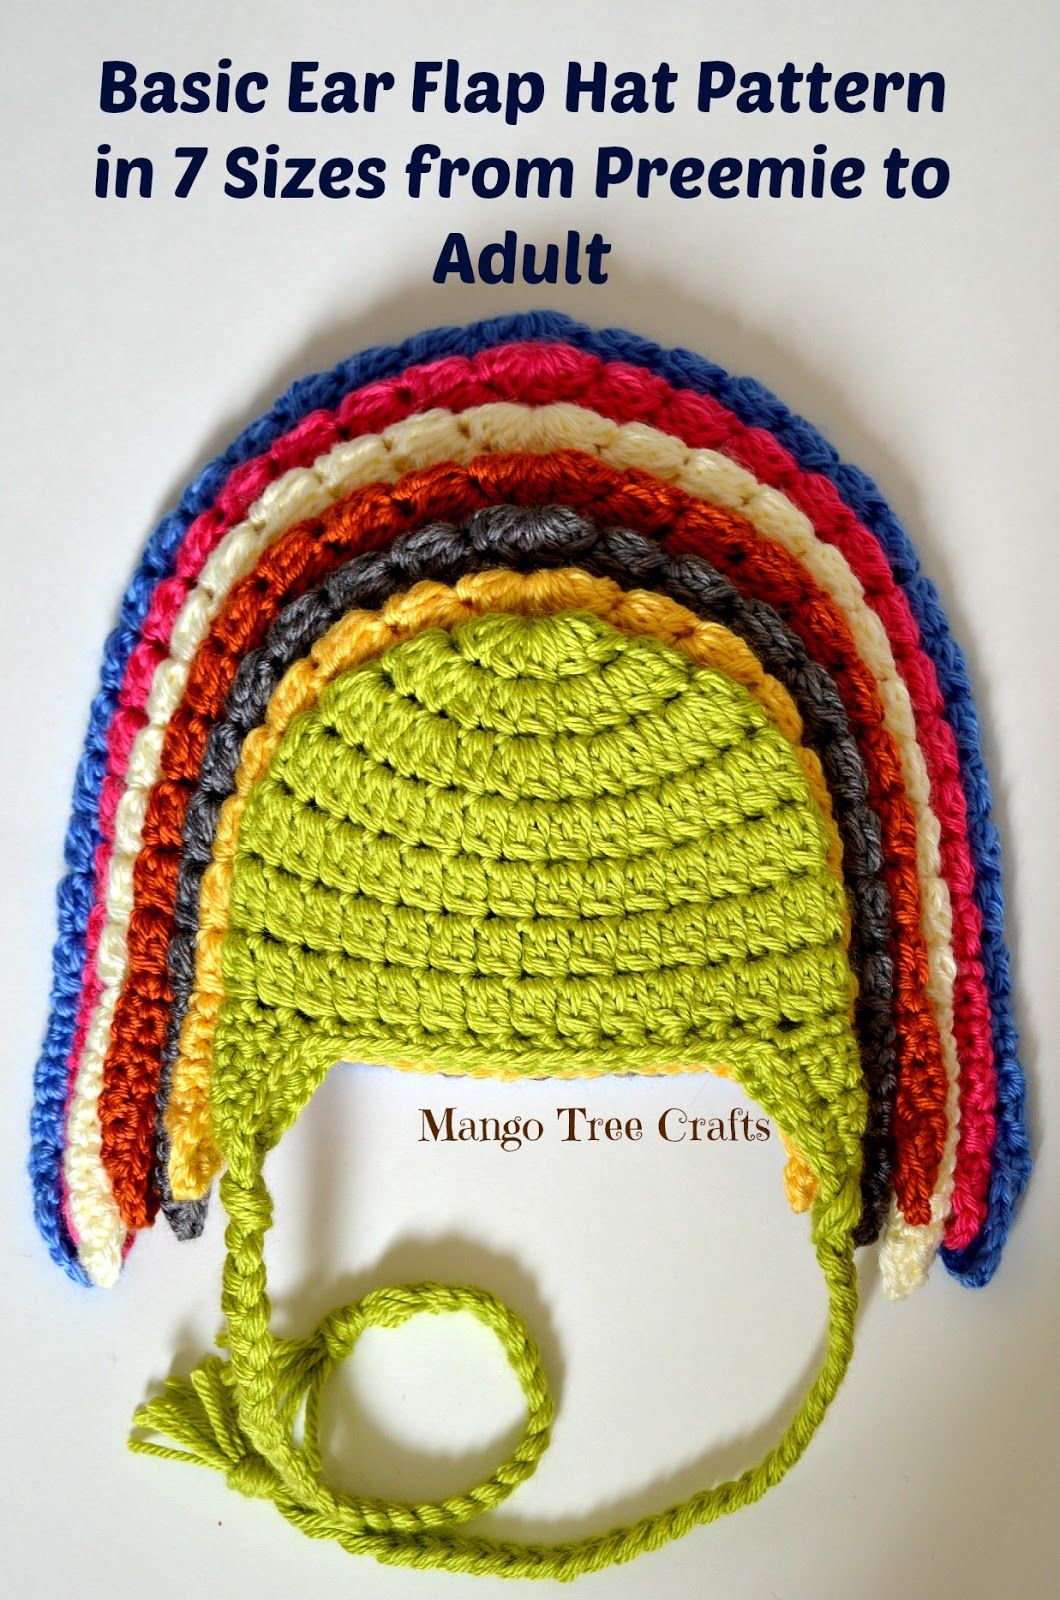 Baby Earflap Hat Crochet Pattern Free Basic Crochet Ear Flap Hat Pattern In 7 Sizes Knitting Pinterest